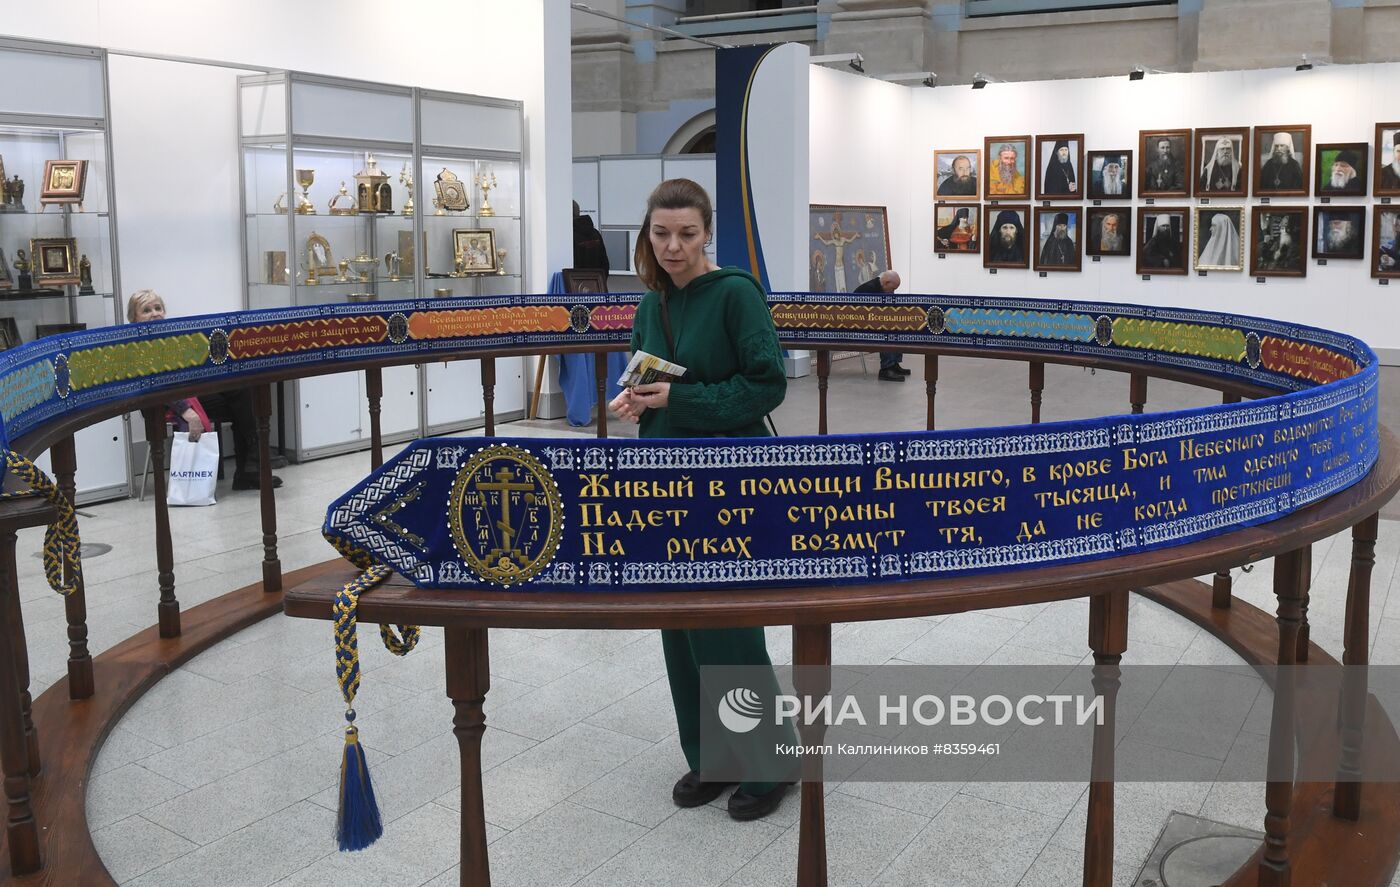 Художественно-промышленная выставка-форум "Уникальная Россия"